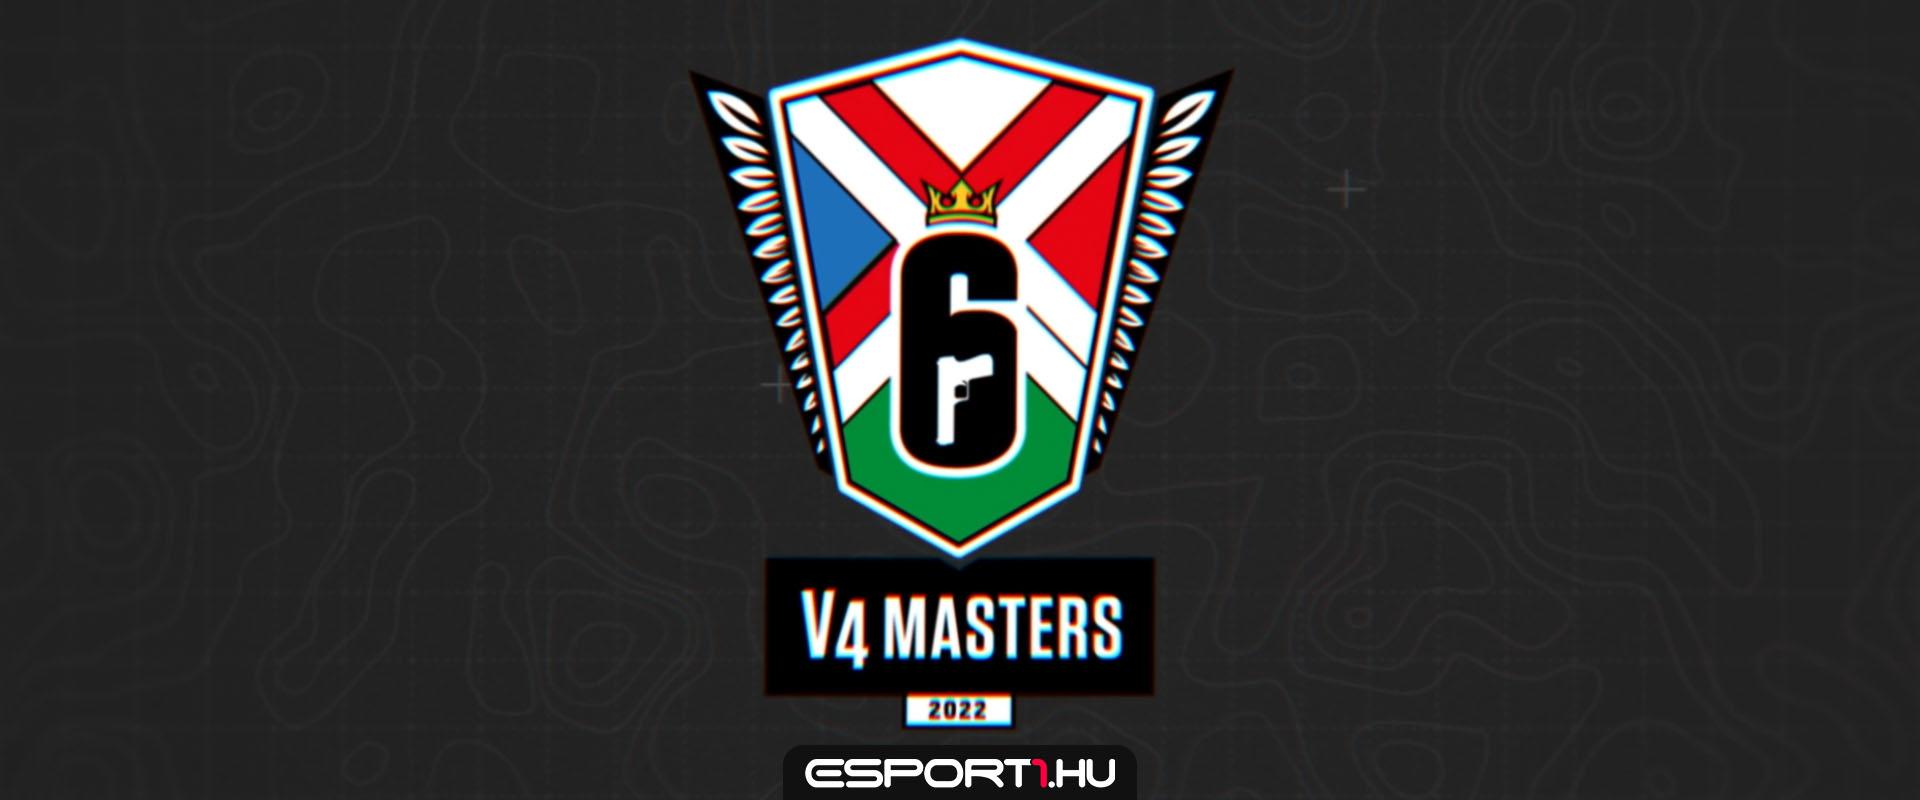 V4 Masters 2022: Múlthéten elindult a liga, két magyar csapatot is követhetünk